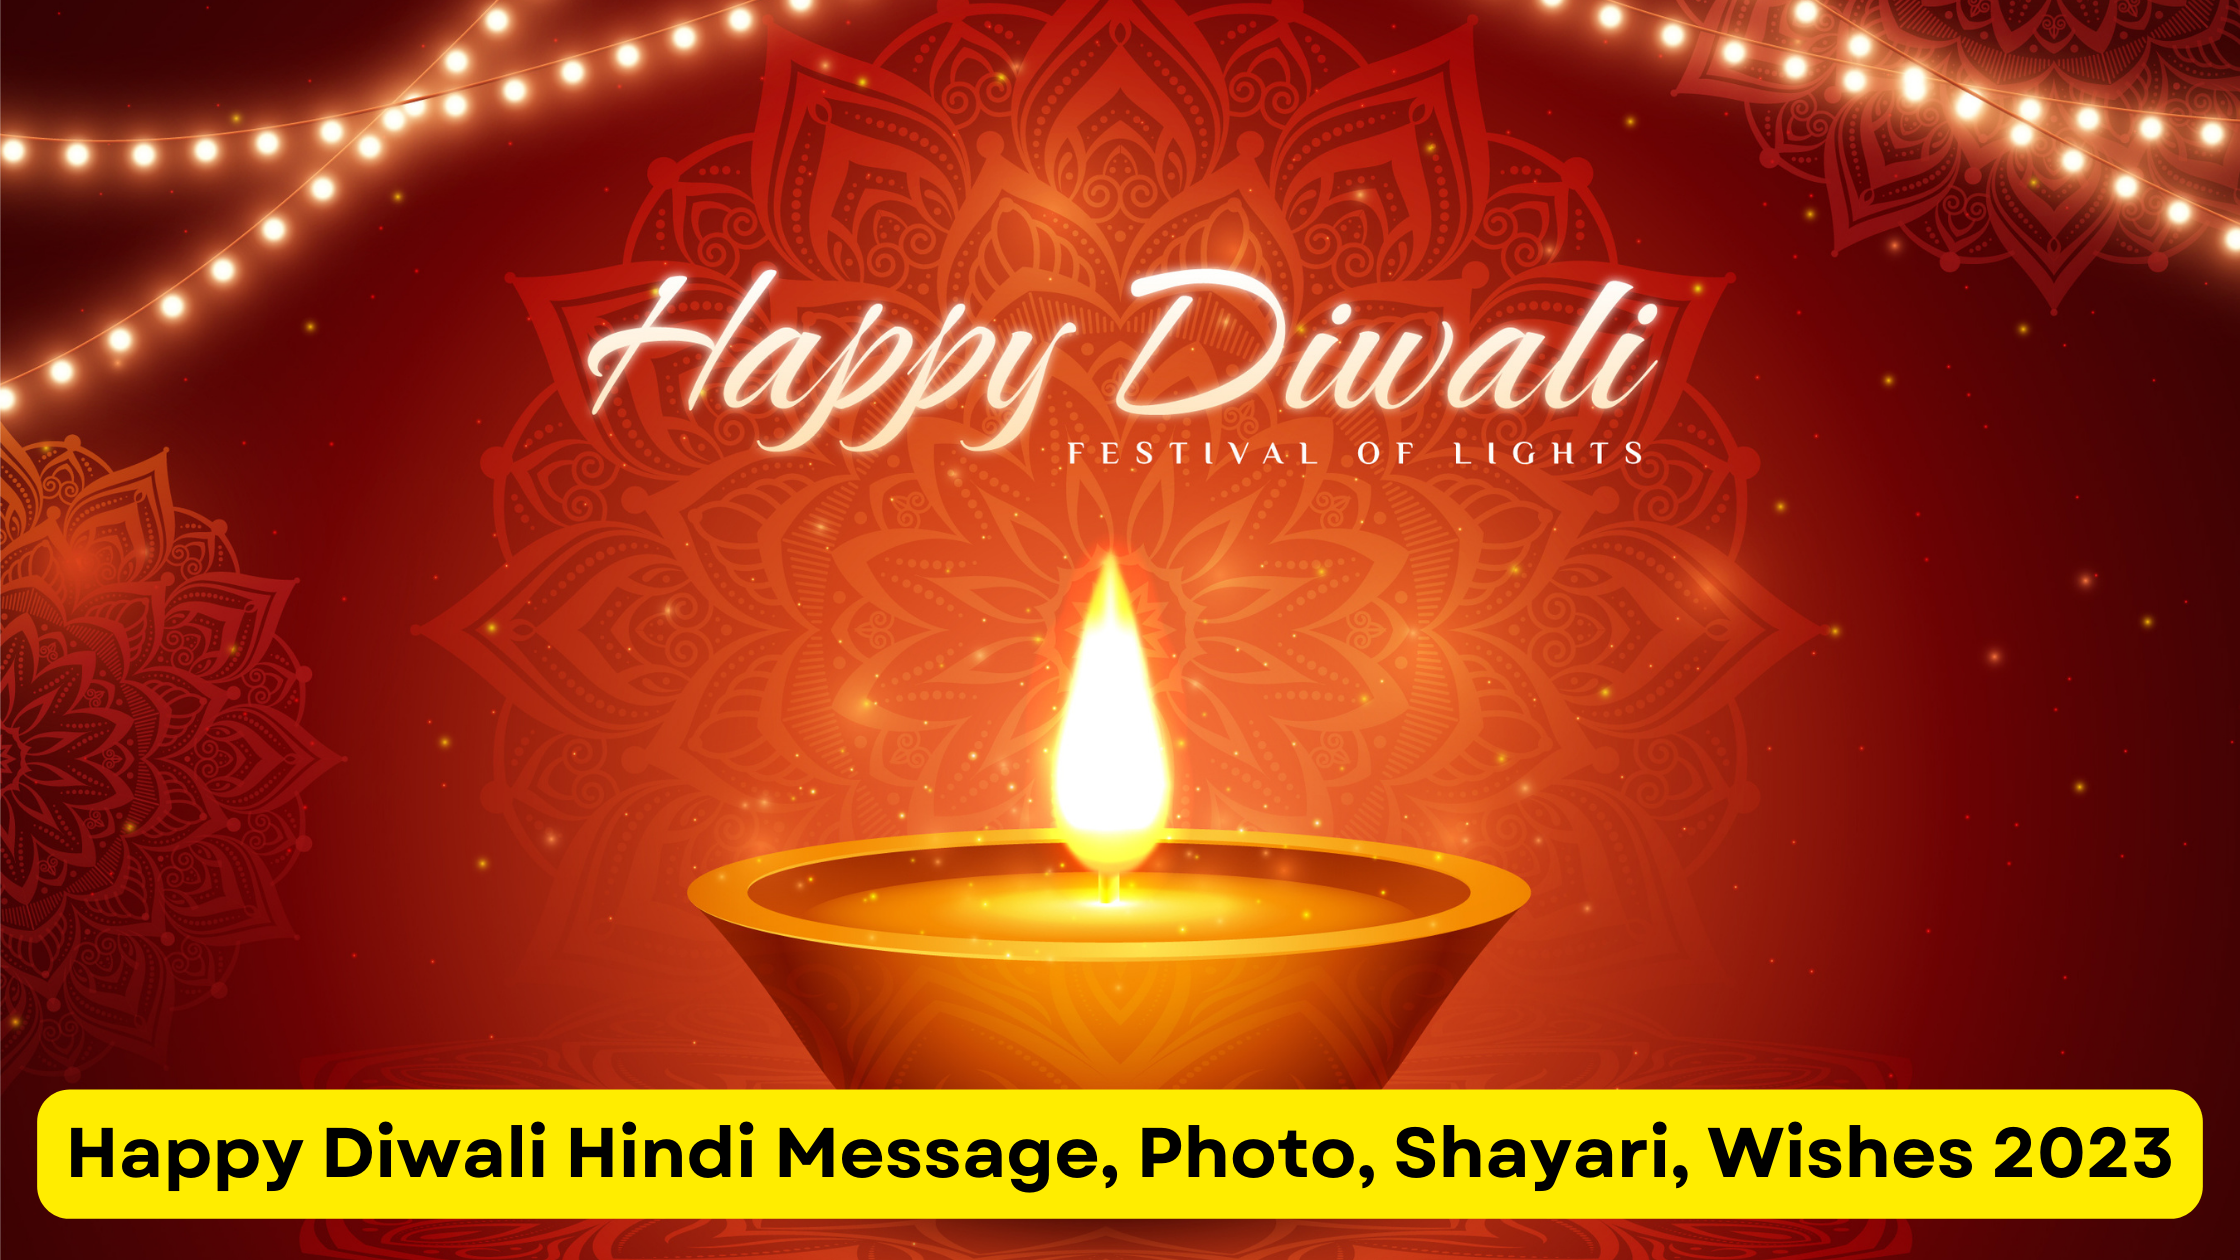 Happy Diwali Hindi Message, photo, Shayari, wishes 2023